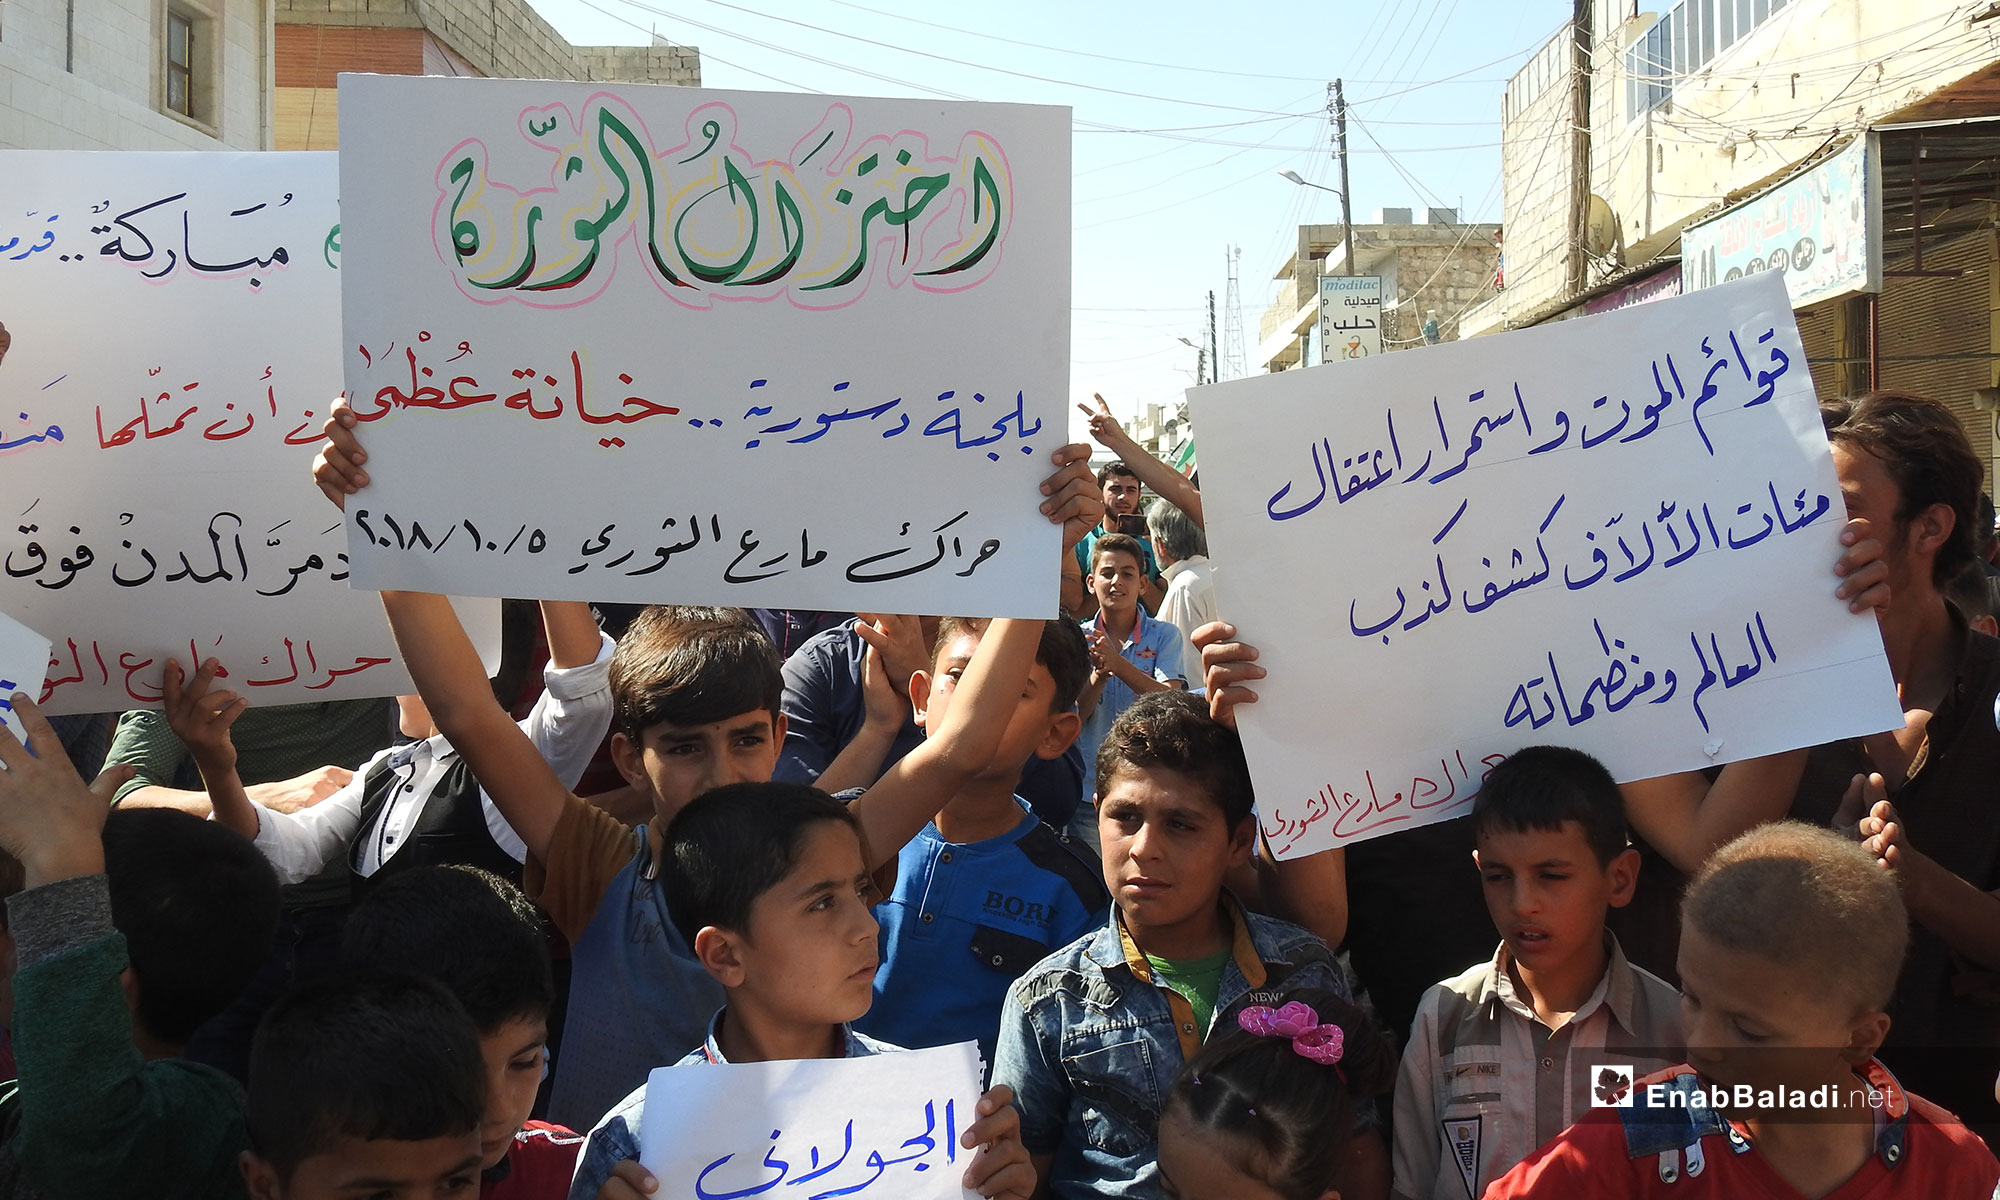 مظاهرات في بلدة مارع بريف حلب تطالب بإسقاط النظام السوري- 5 تشرين الأول 2018 (عنب بلدي)